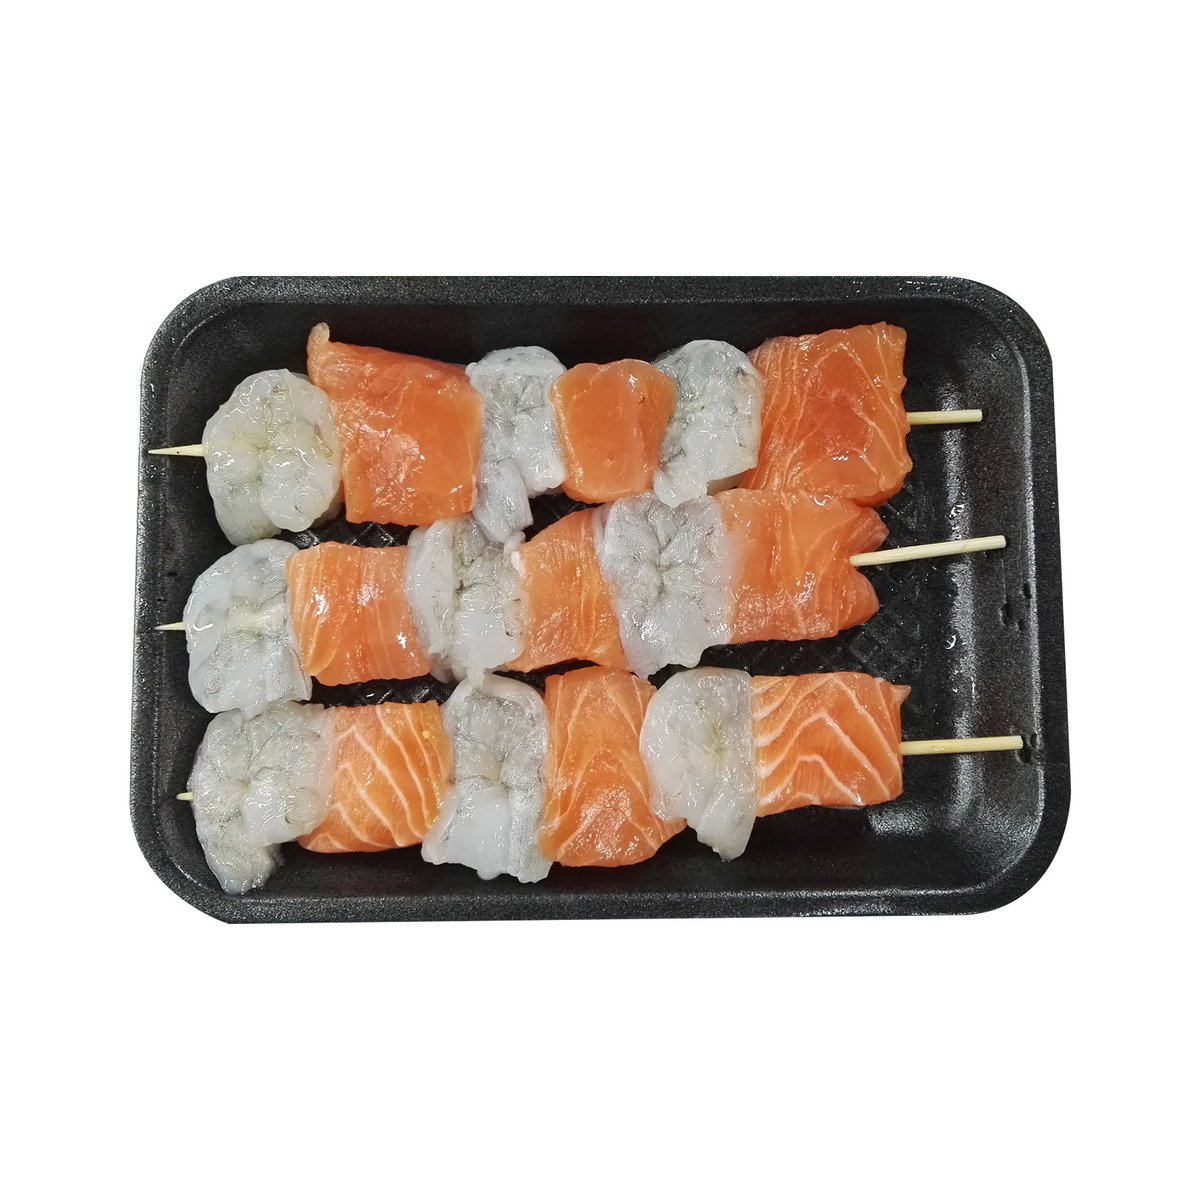 Buy Salmon & Shrimp Kebab 250 g Online at Best Price | Marinated Fish | Lulu UAE in UAE